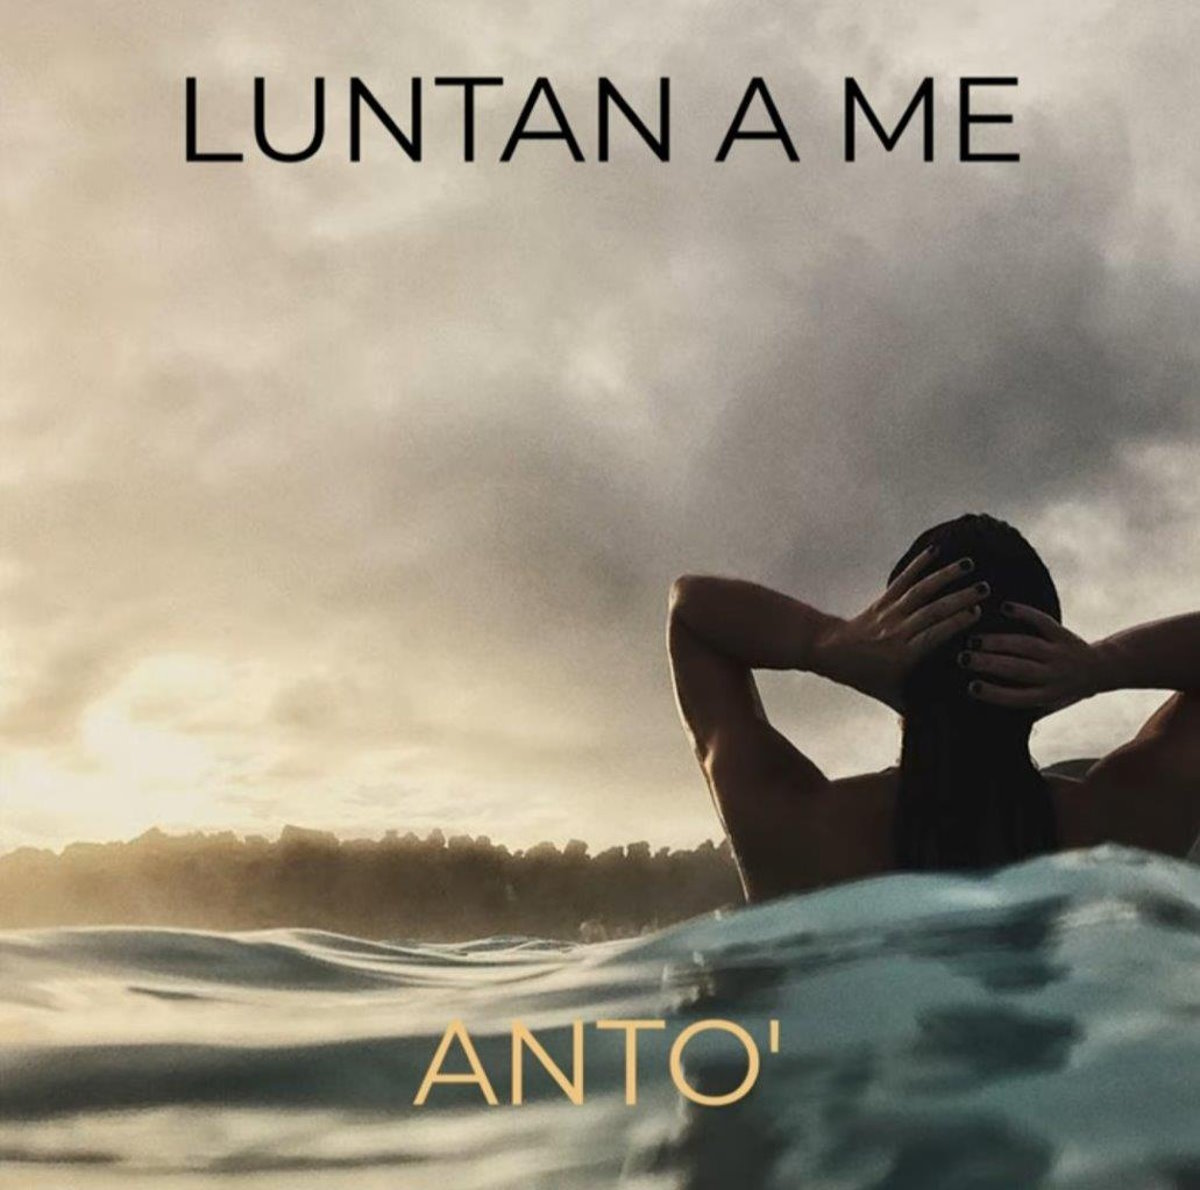 Nuovo singolo per Anto', in radio con Luntan a me